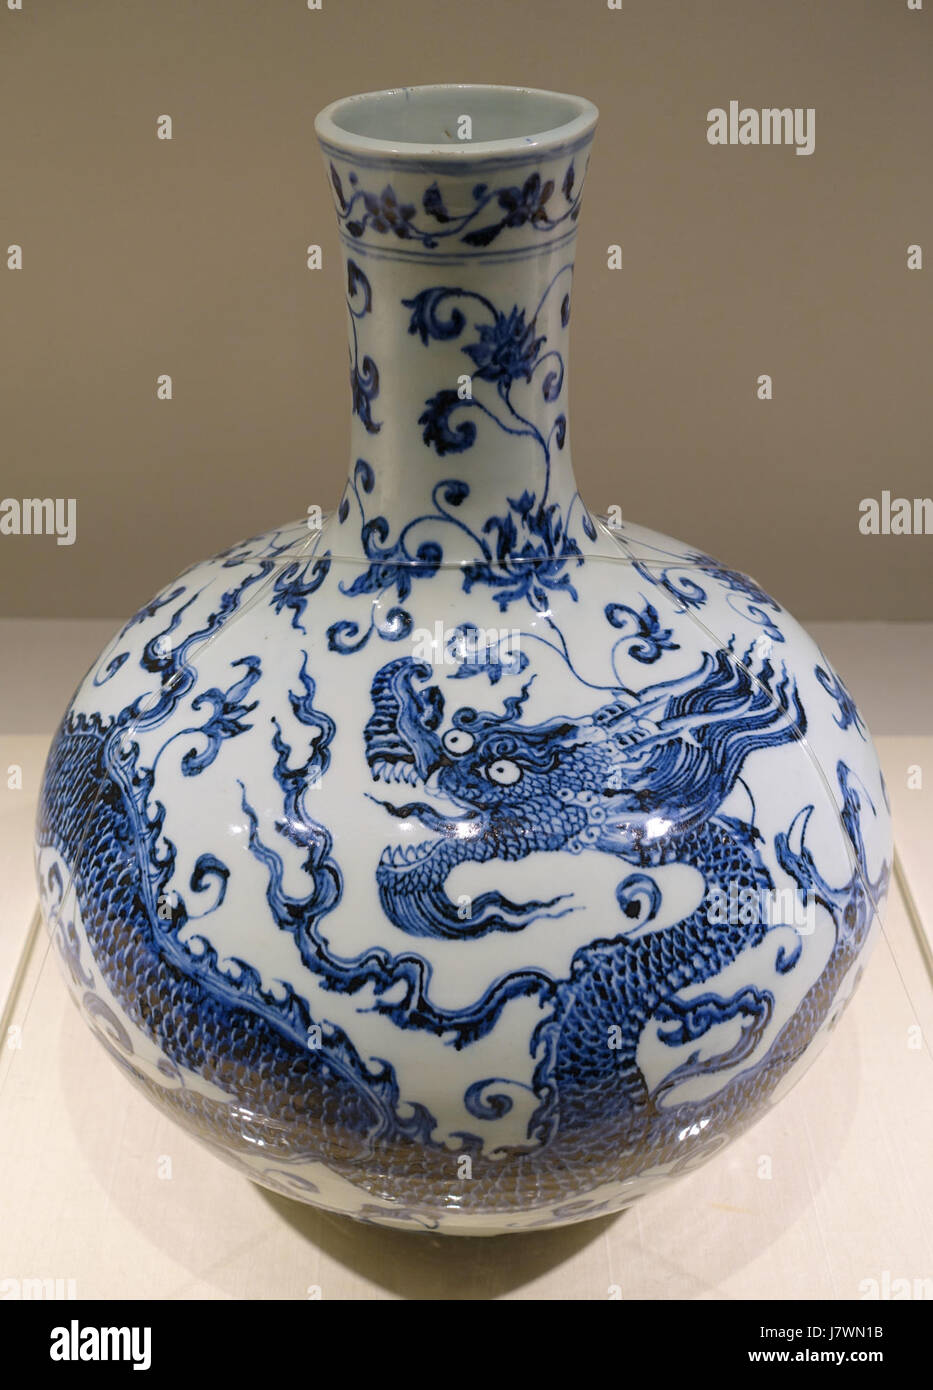 Vaso bottiglia con dragon e design arabesque, Cina, Jingdezhen forno, dinastia Ming, periodo Yongle, 1403 1424 Annuncio, blu e bianco Matsuoka Museum of Art Tokyo, Giappone DSC07353 Foto Stock